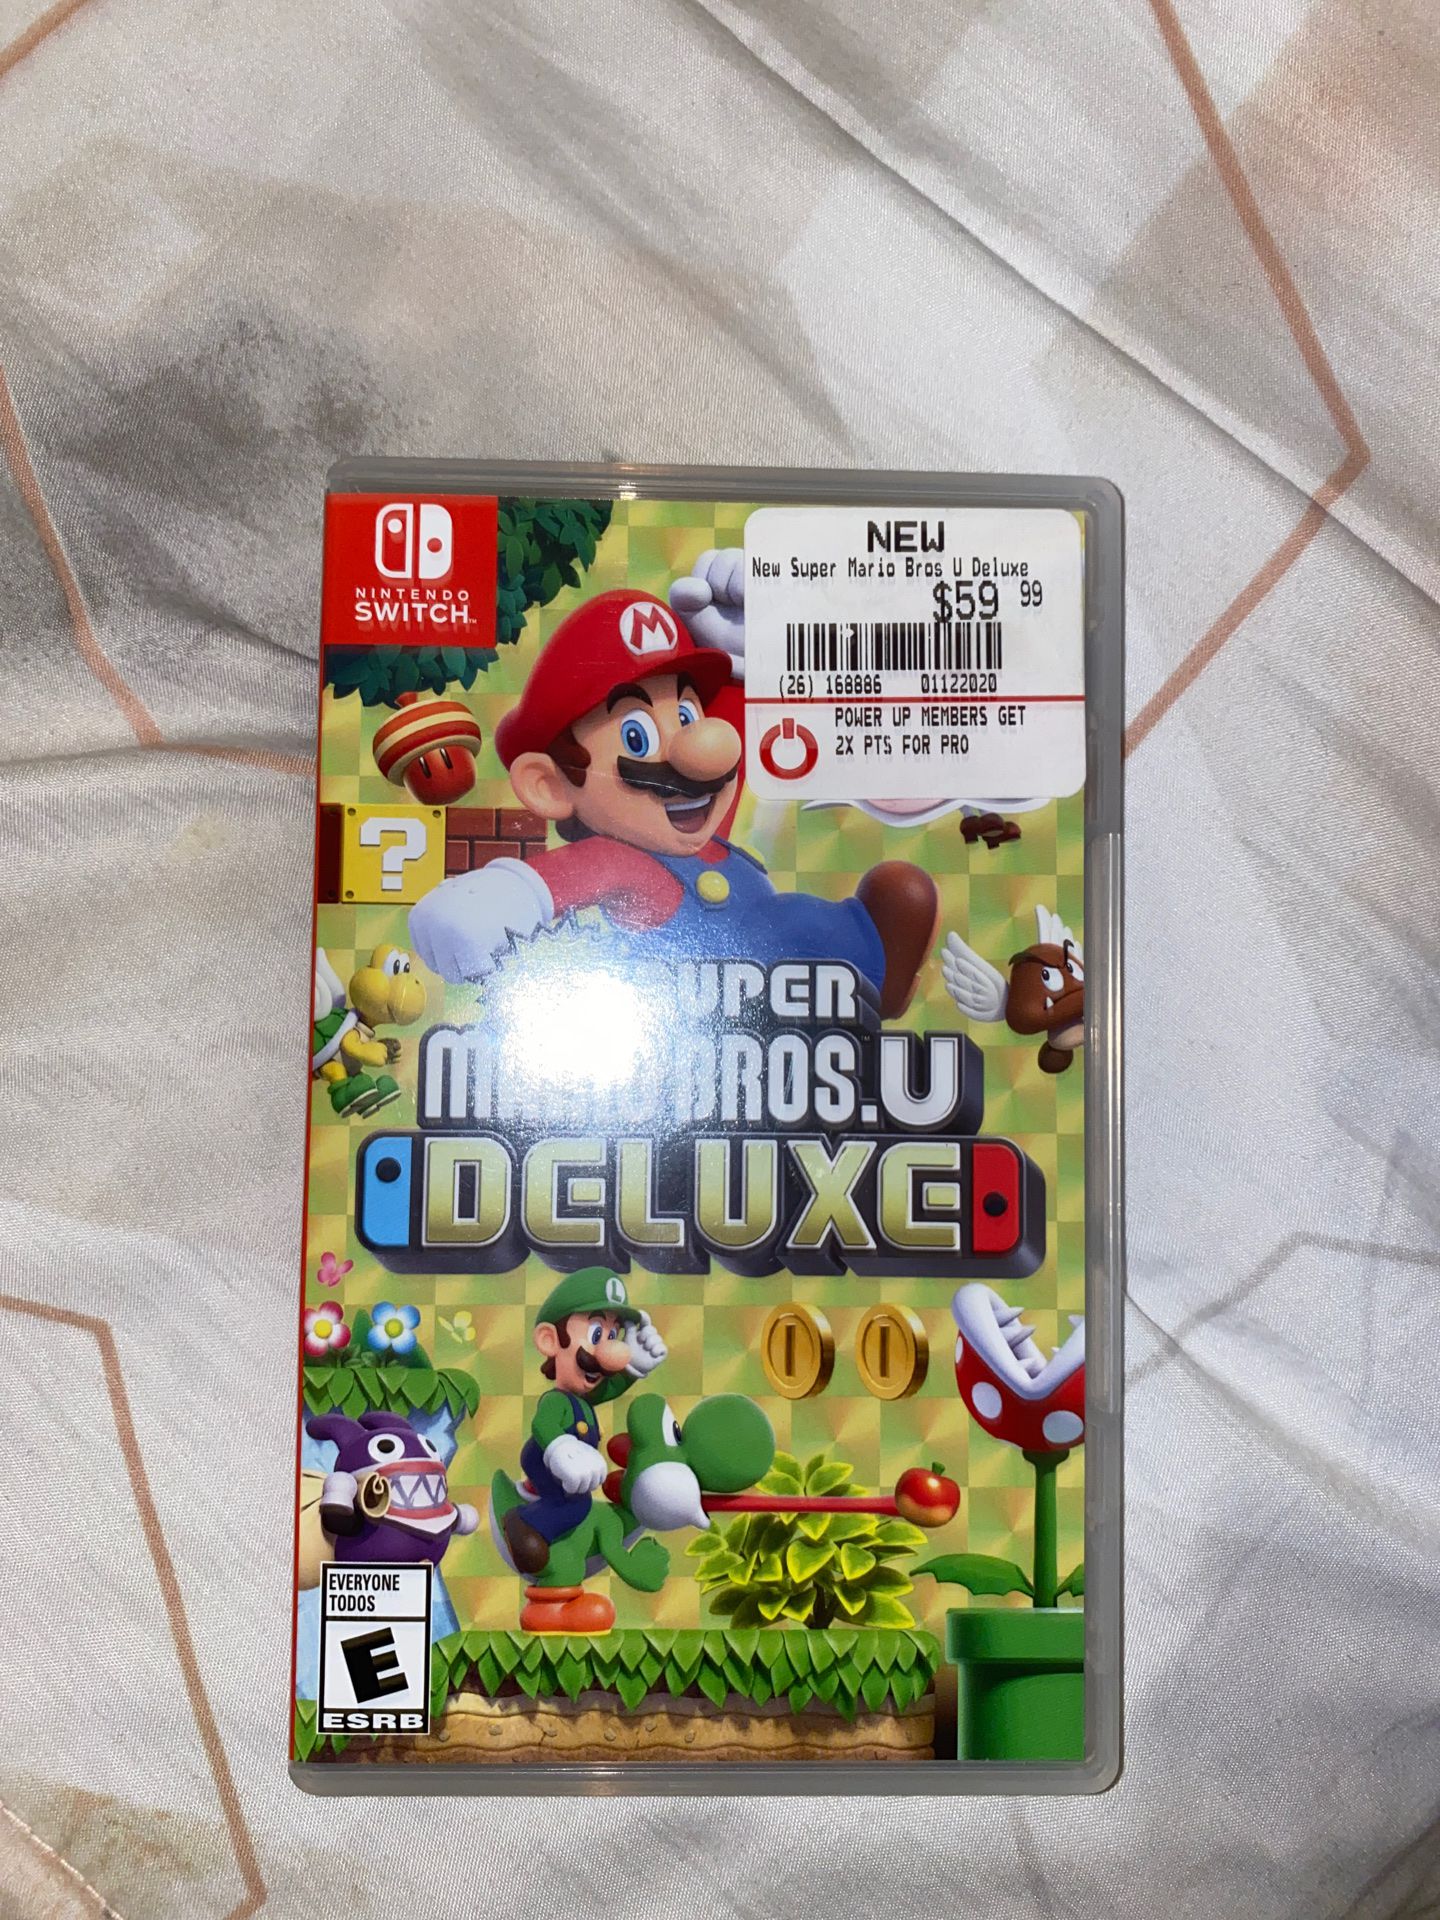 Super Mario bro’s u deluxe